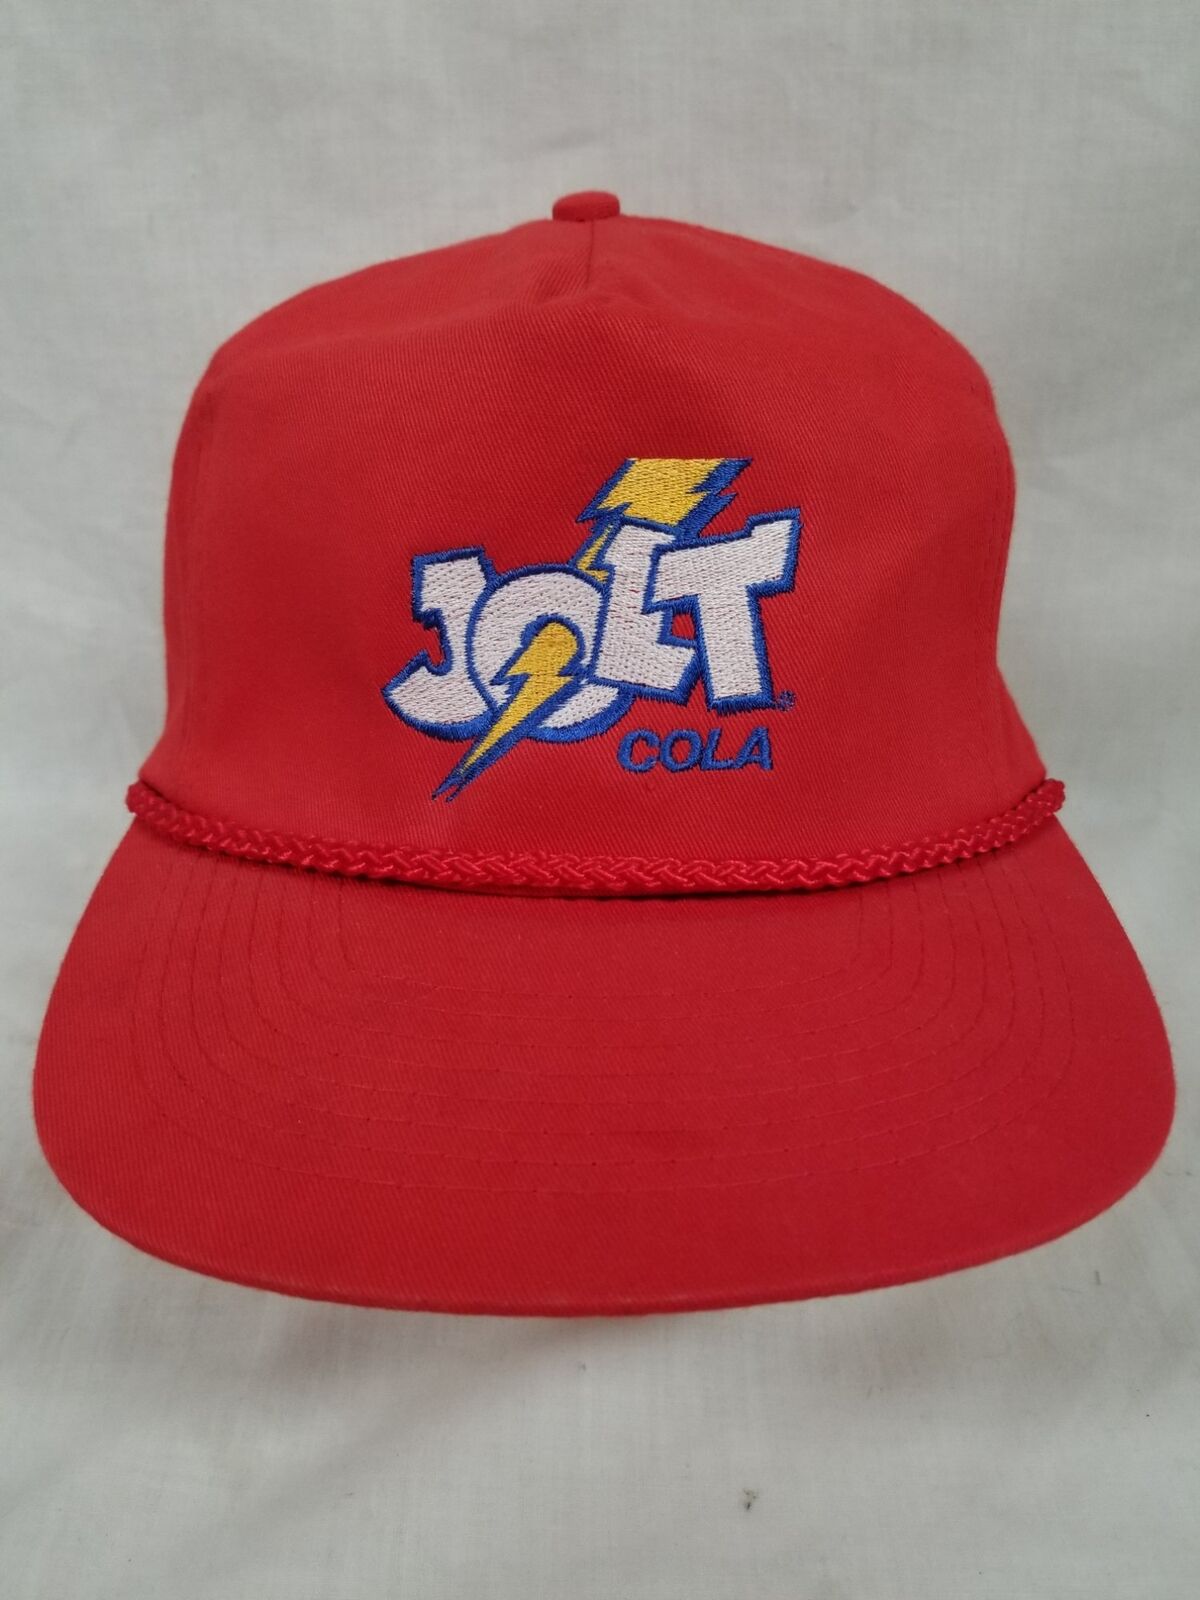 Vintage Jolt Cola Red Rope Hat Cap Snapback 90s Embroidered